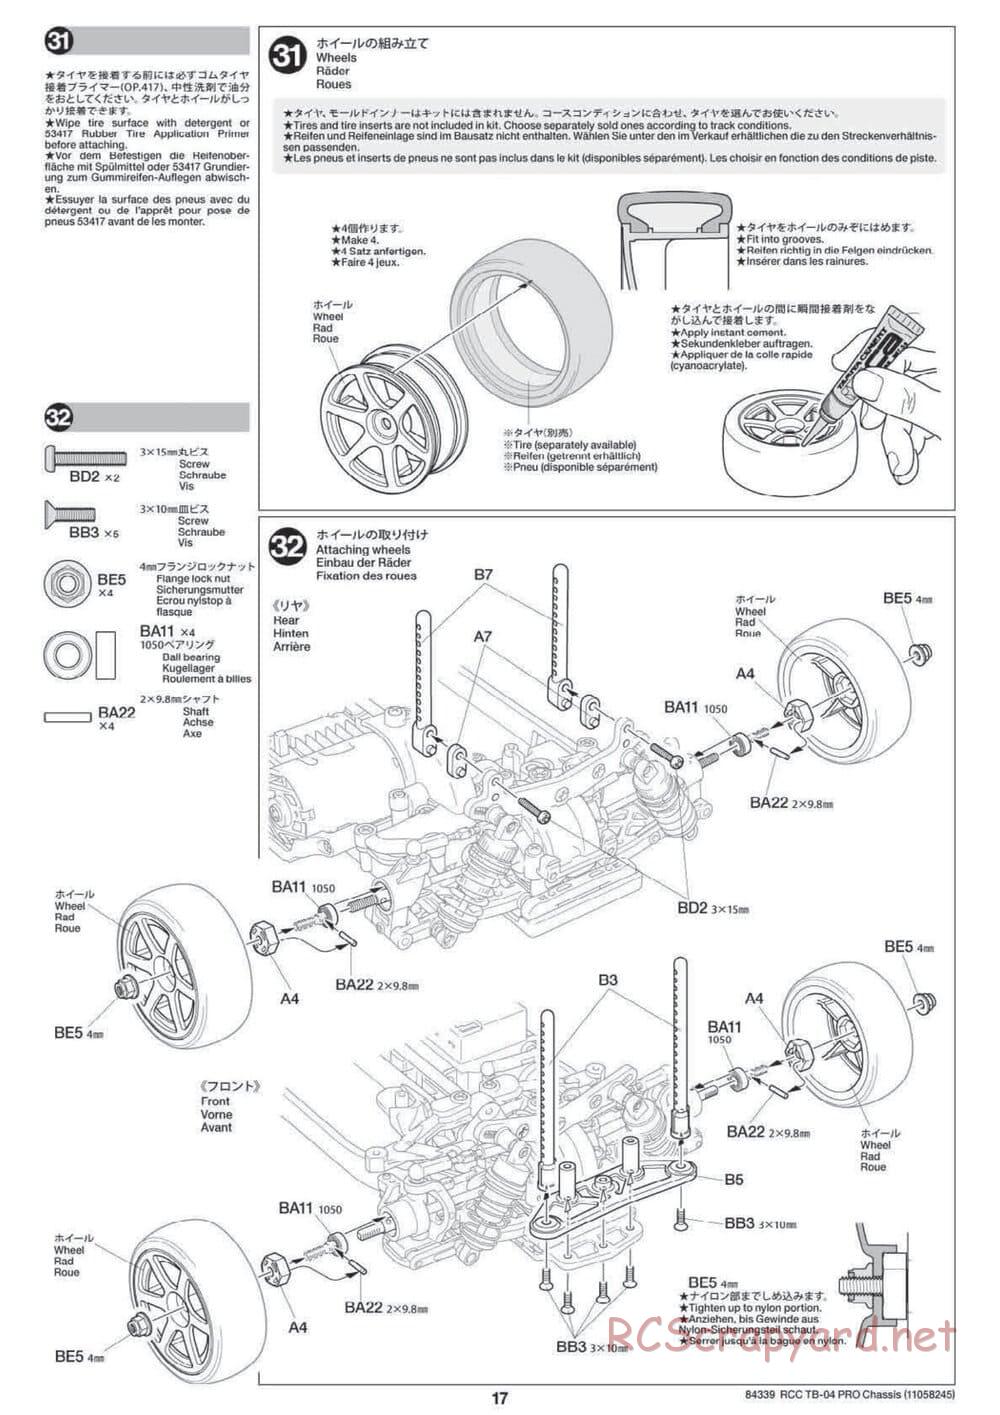 Tamiya - TB-04 Pro Chassis - Manual - Page 17